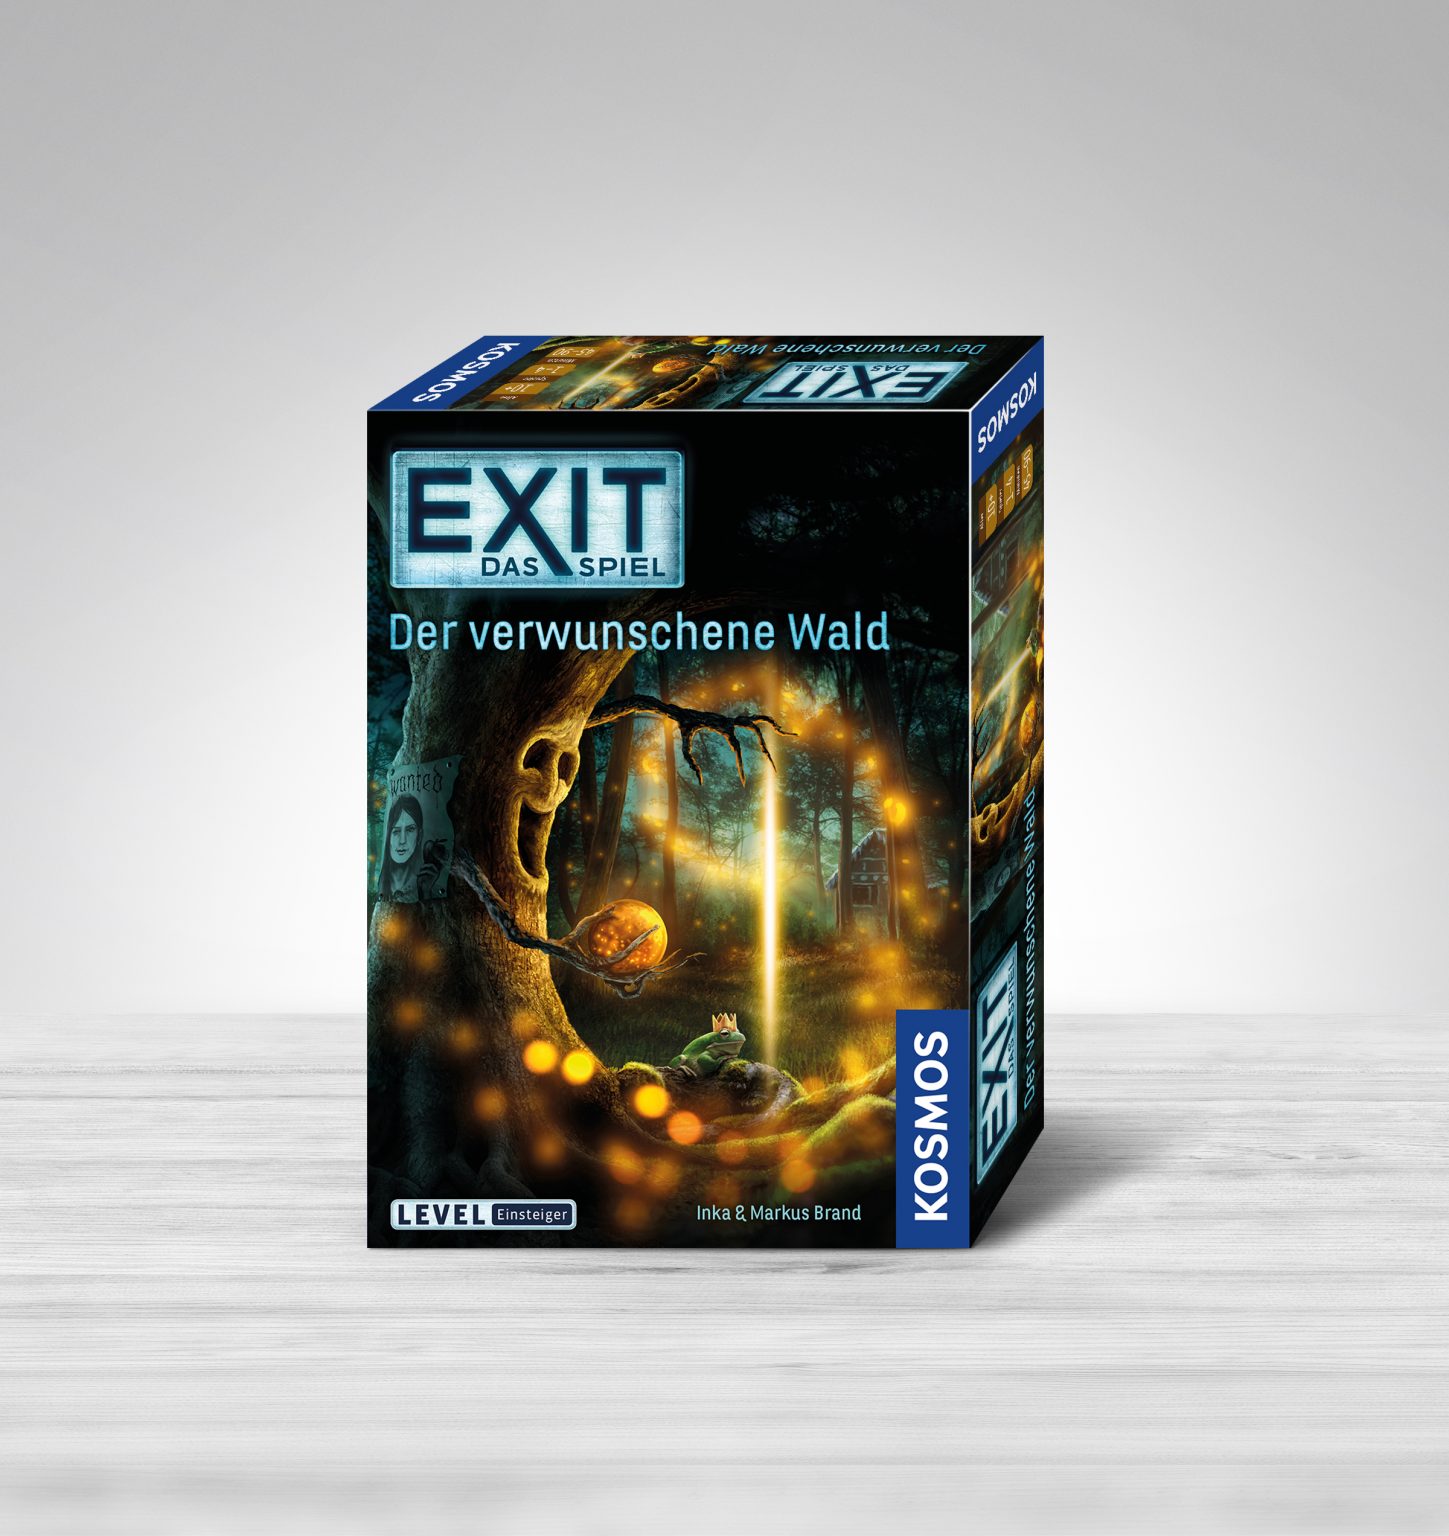 Exit – Das Spiel: Der verwunschene Wald